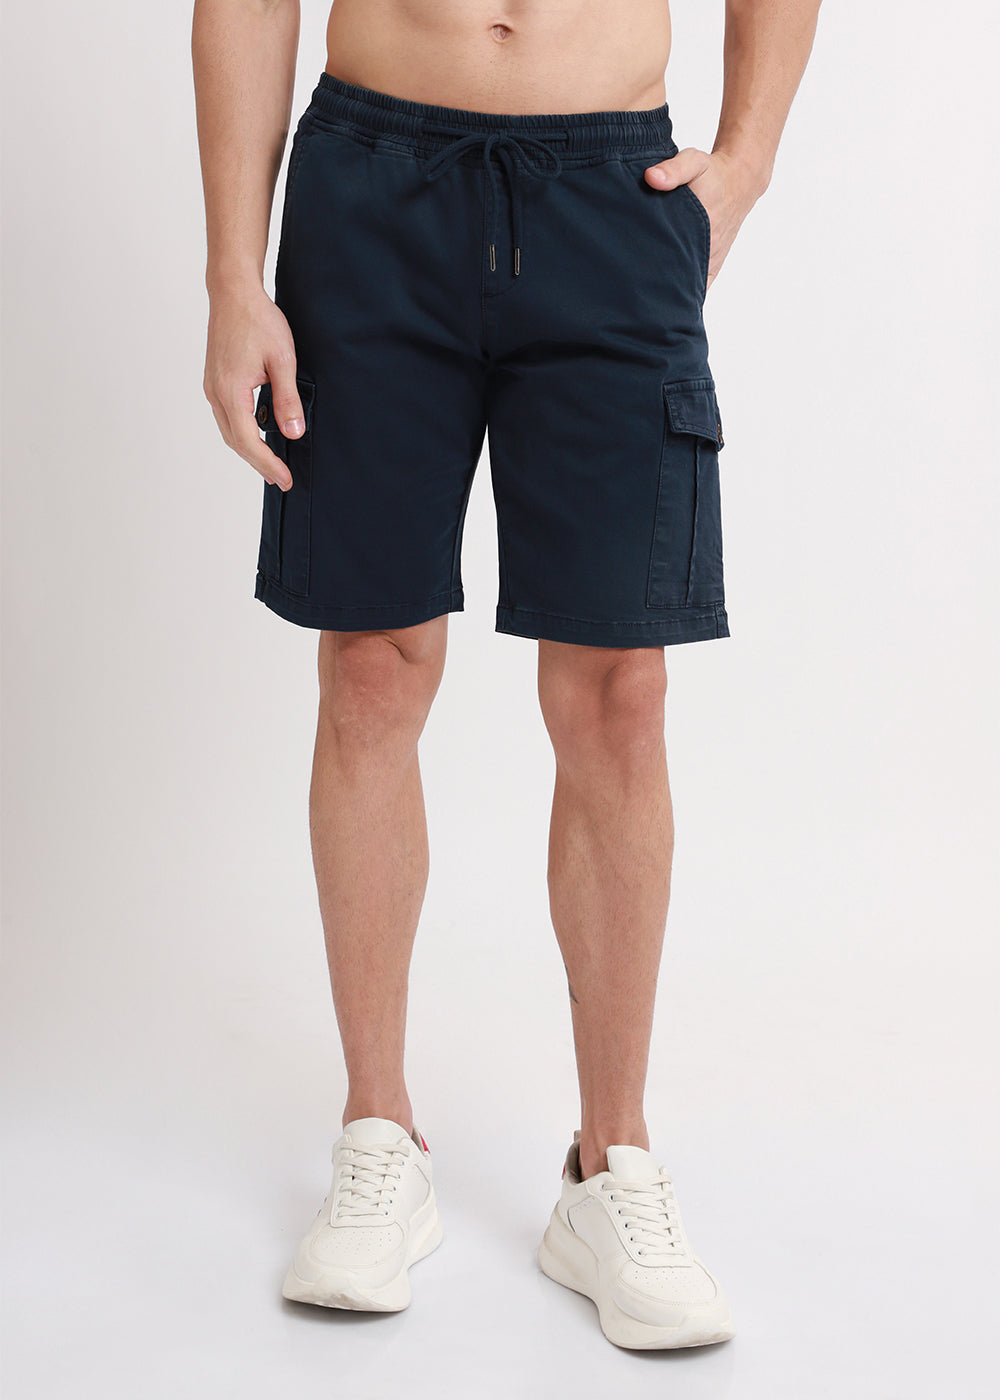 Navy Blue Cotton Cargo Shorts4